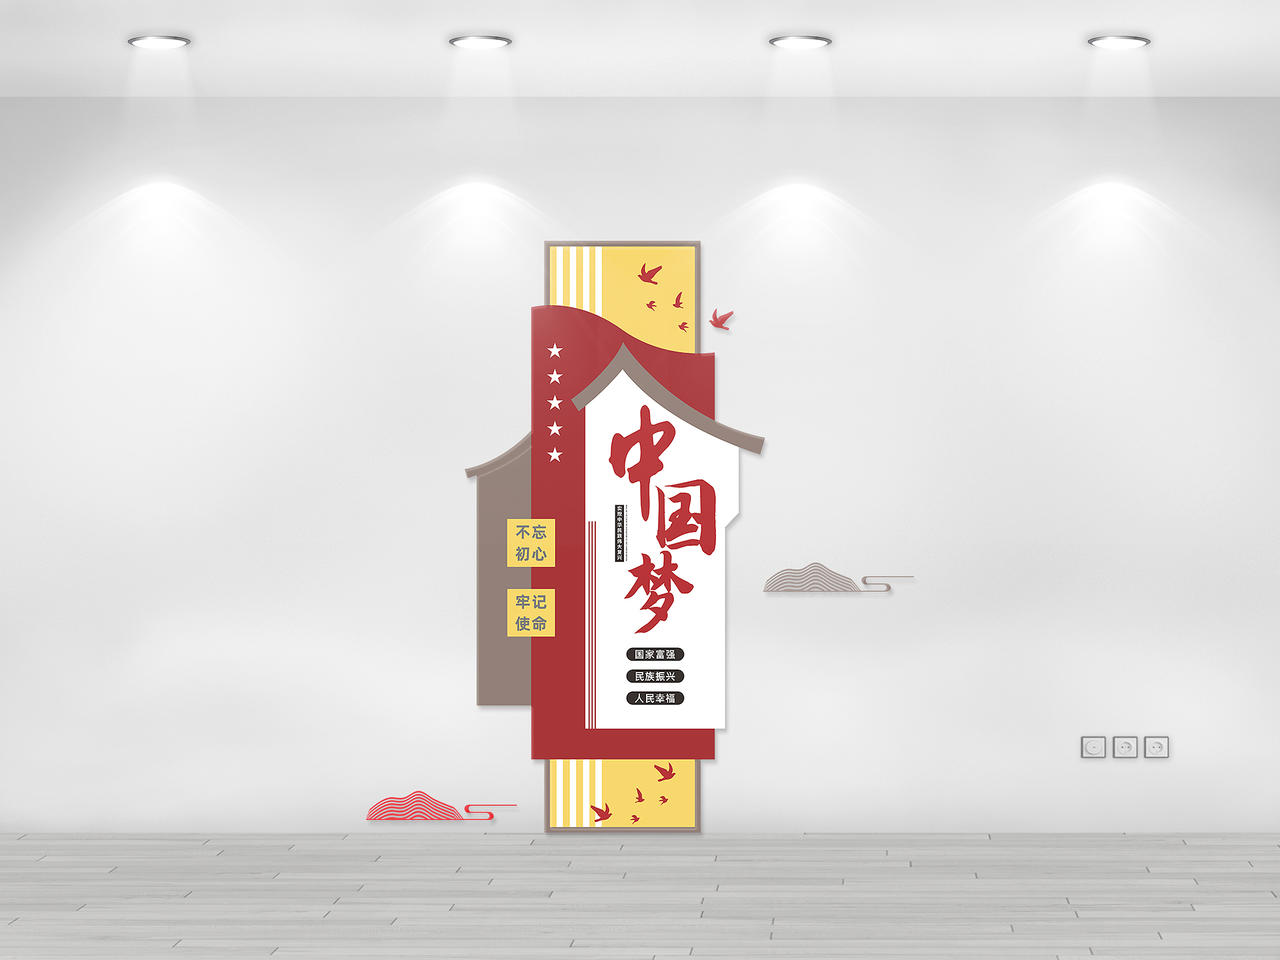 简约大气红色中国梦自尊自强宣传文化墙样式中国梦文化墙